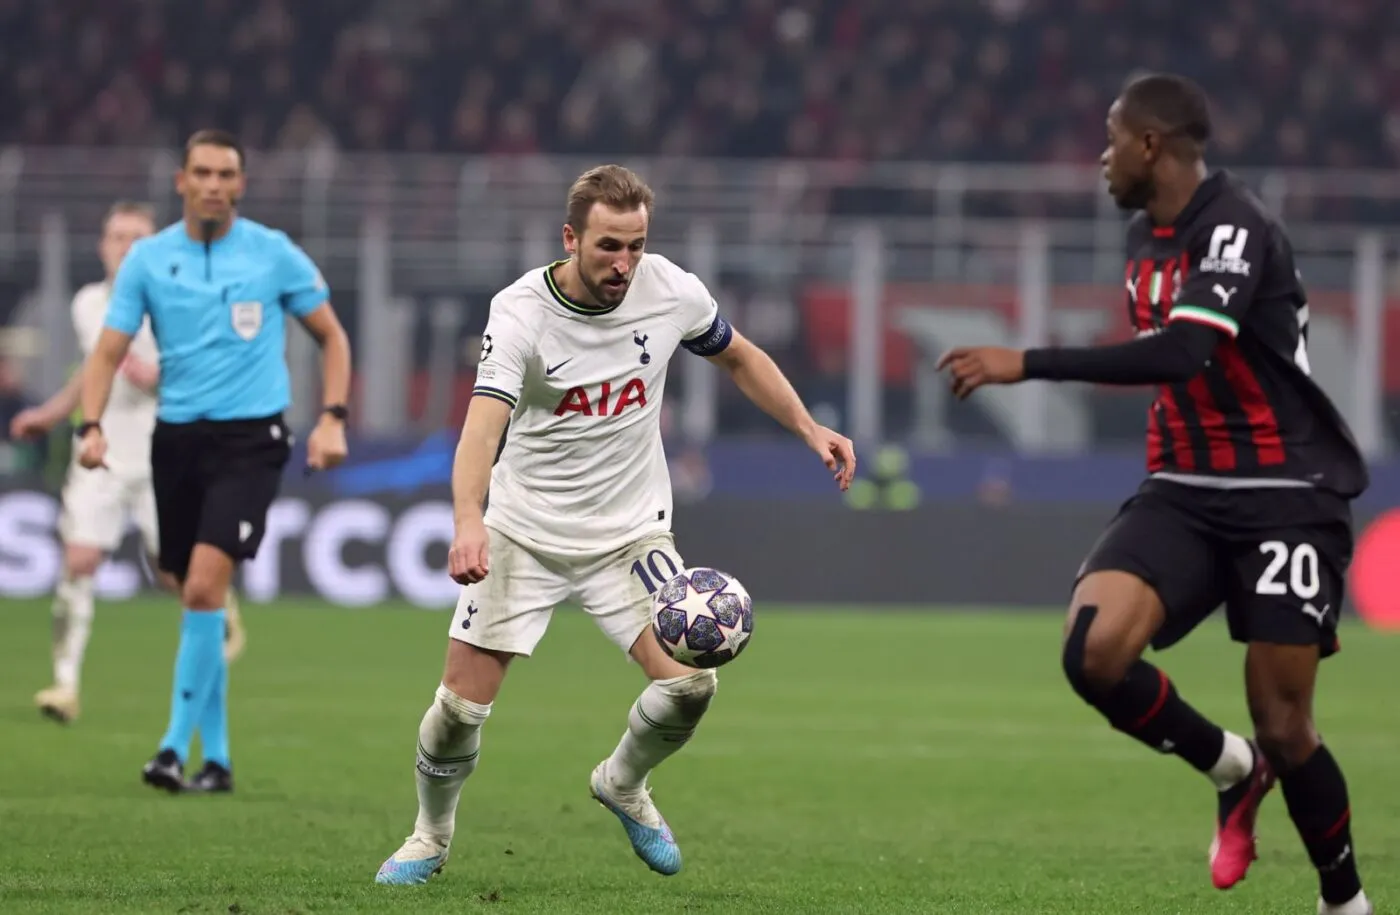 Pronostic Tottenham AC Milan : Analyse, cotes et prono du 8e de finale de Ligue des champions